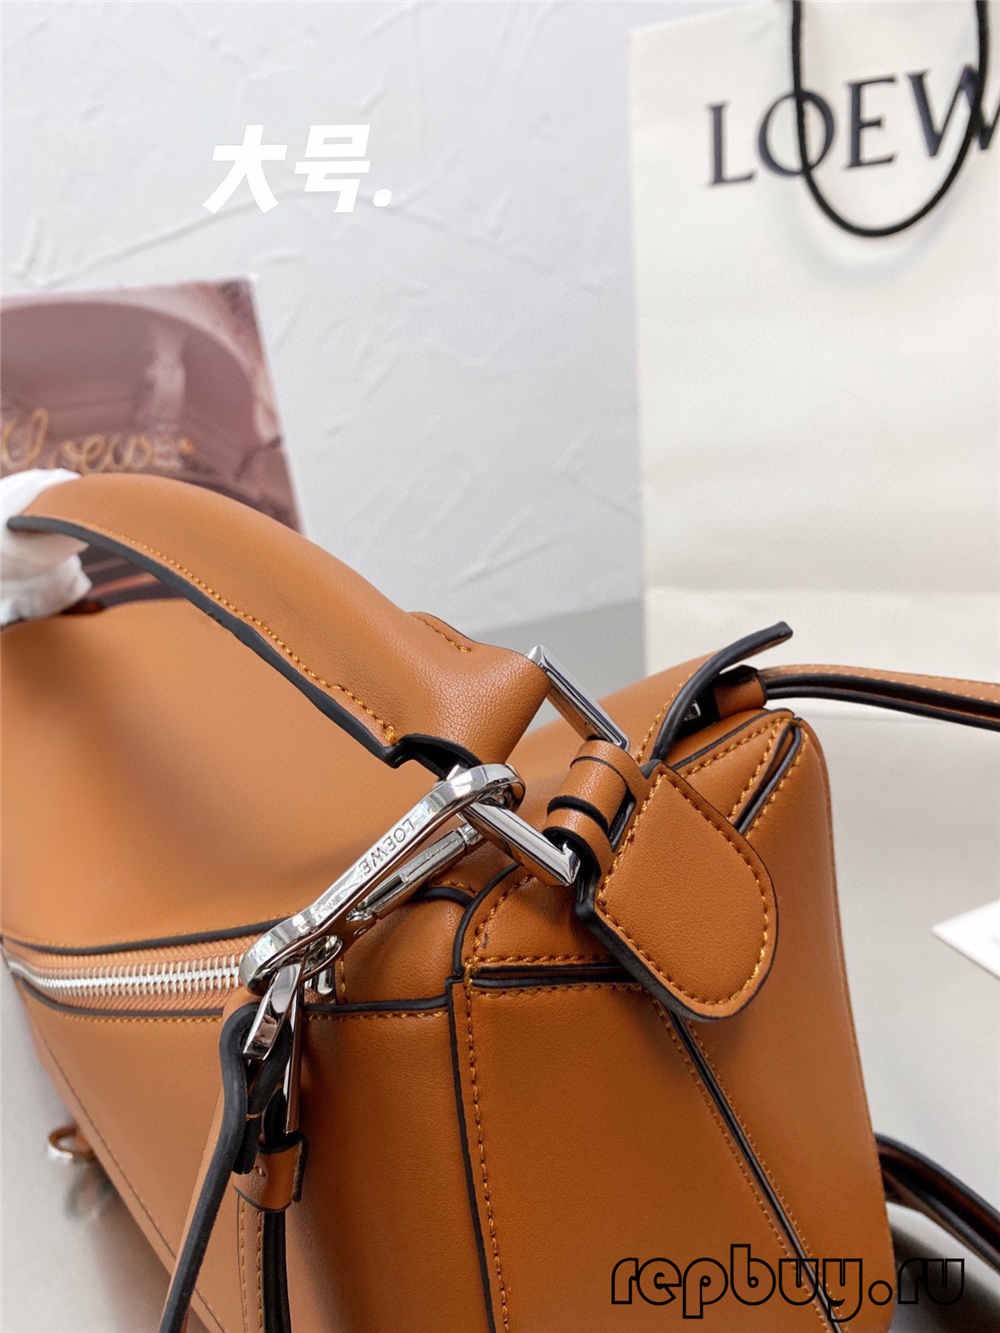 图片包含 袋子፣ 桌子፣ 自行车፣ 棕色 描述已自动生成